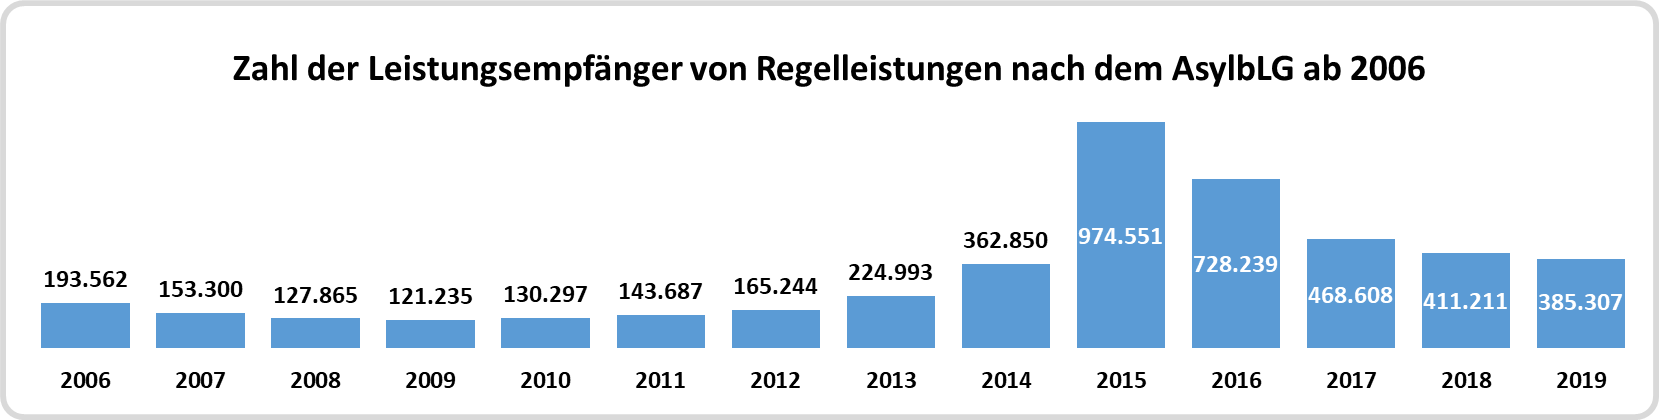 Zahl der Leistungsempfänger nach dem AsylbLG ab 2006